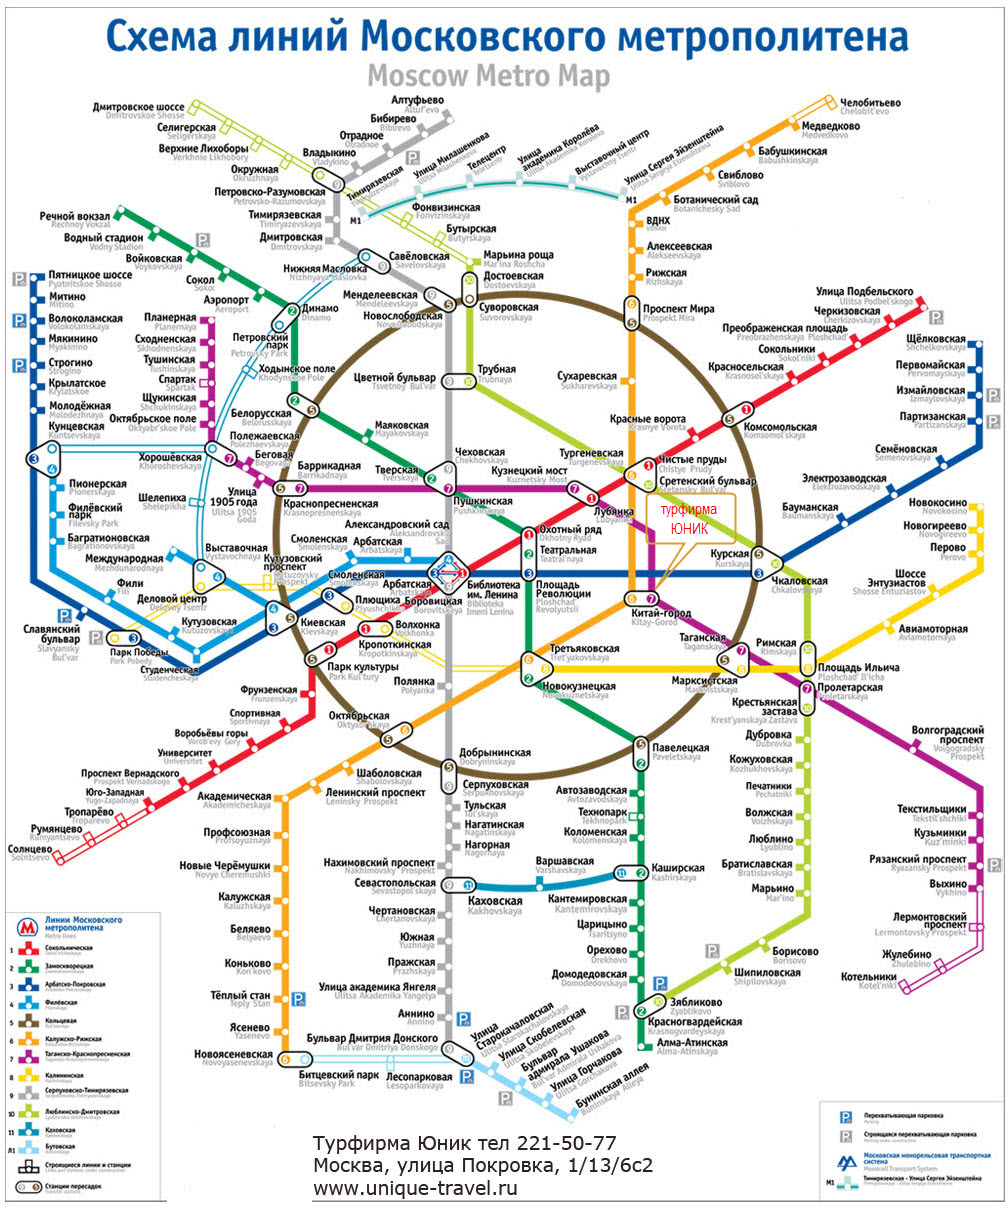 Скачать схему метро москвы на компьютер